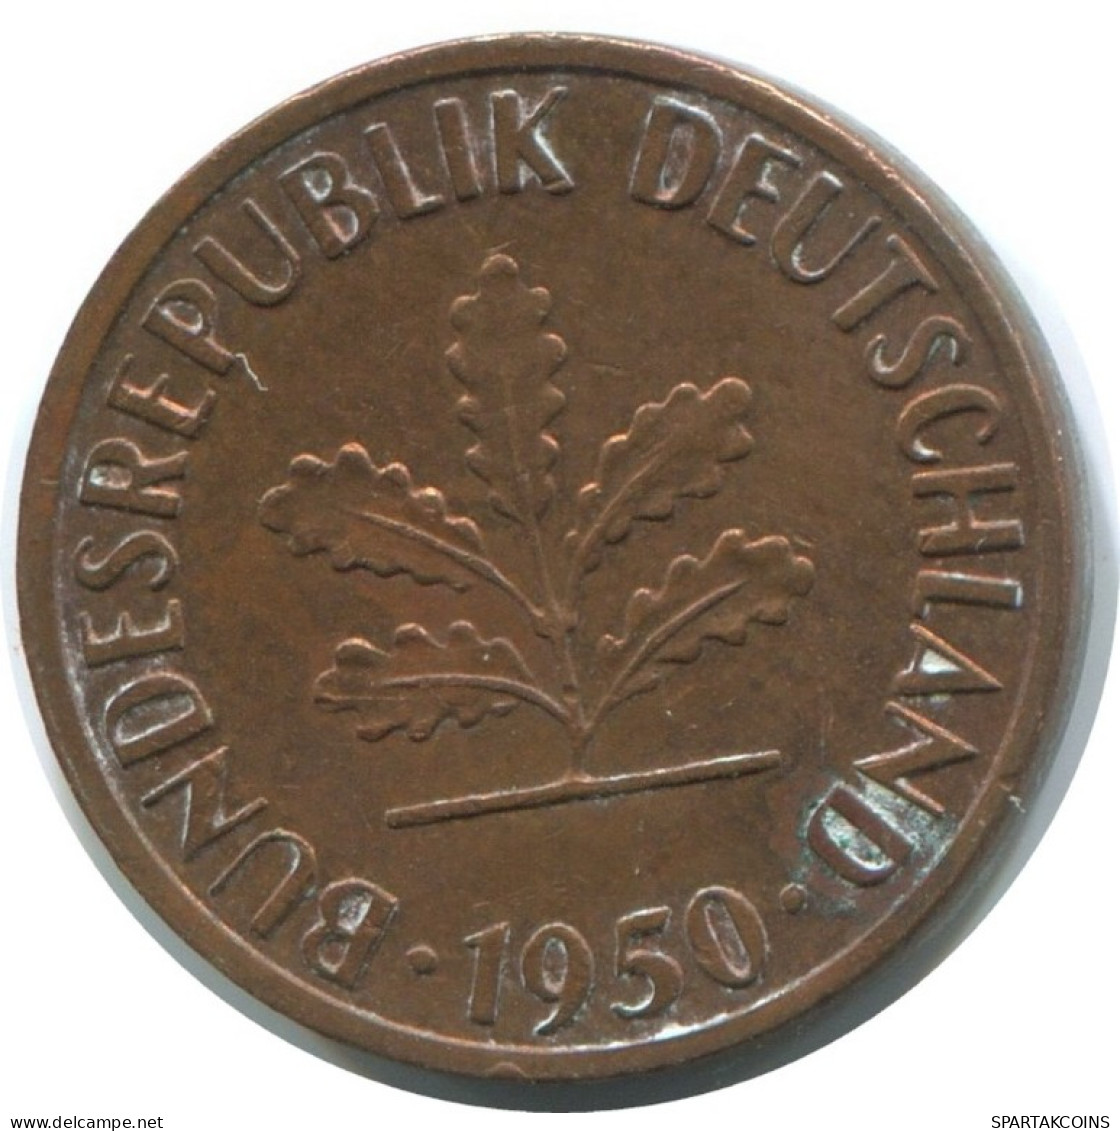 1 PFENNIG 1950 J BRD ALEMANIA Moneda GERMANY #AD884.9.E.A - 1 Pfennig